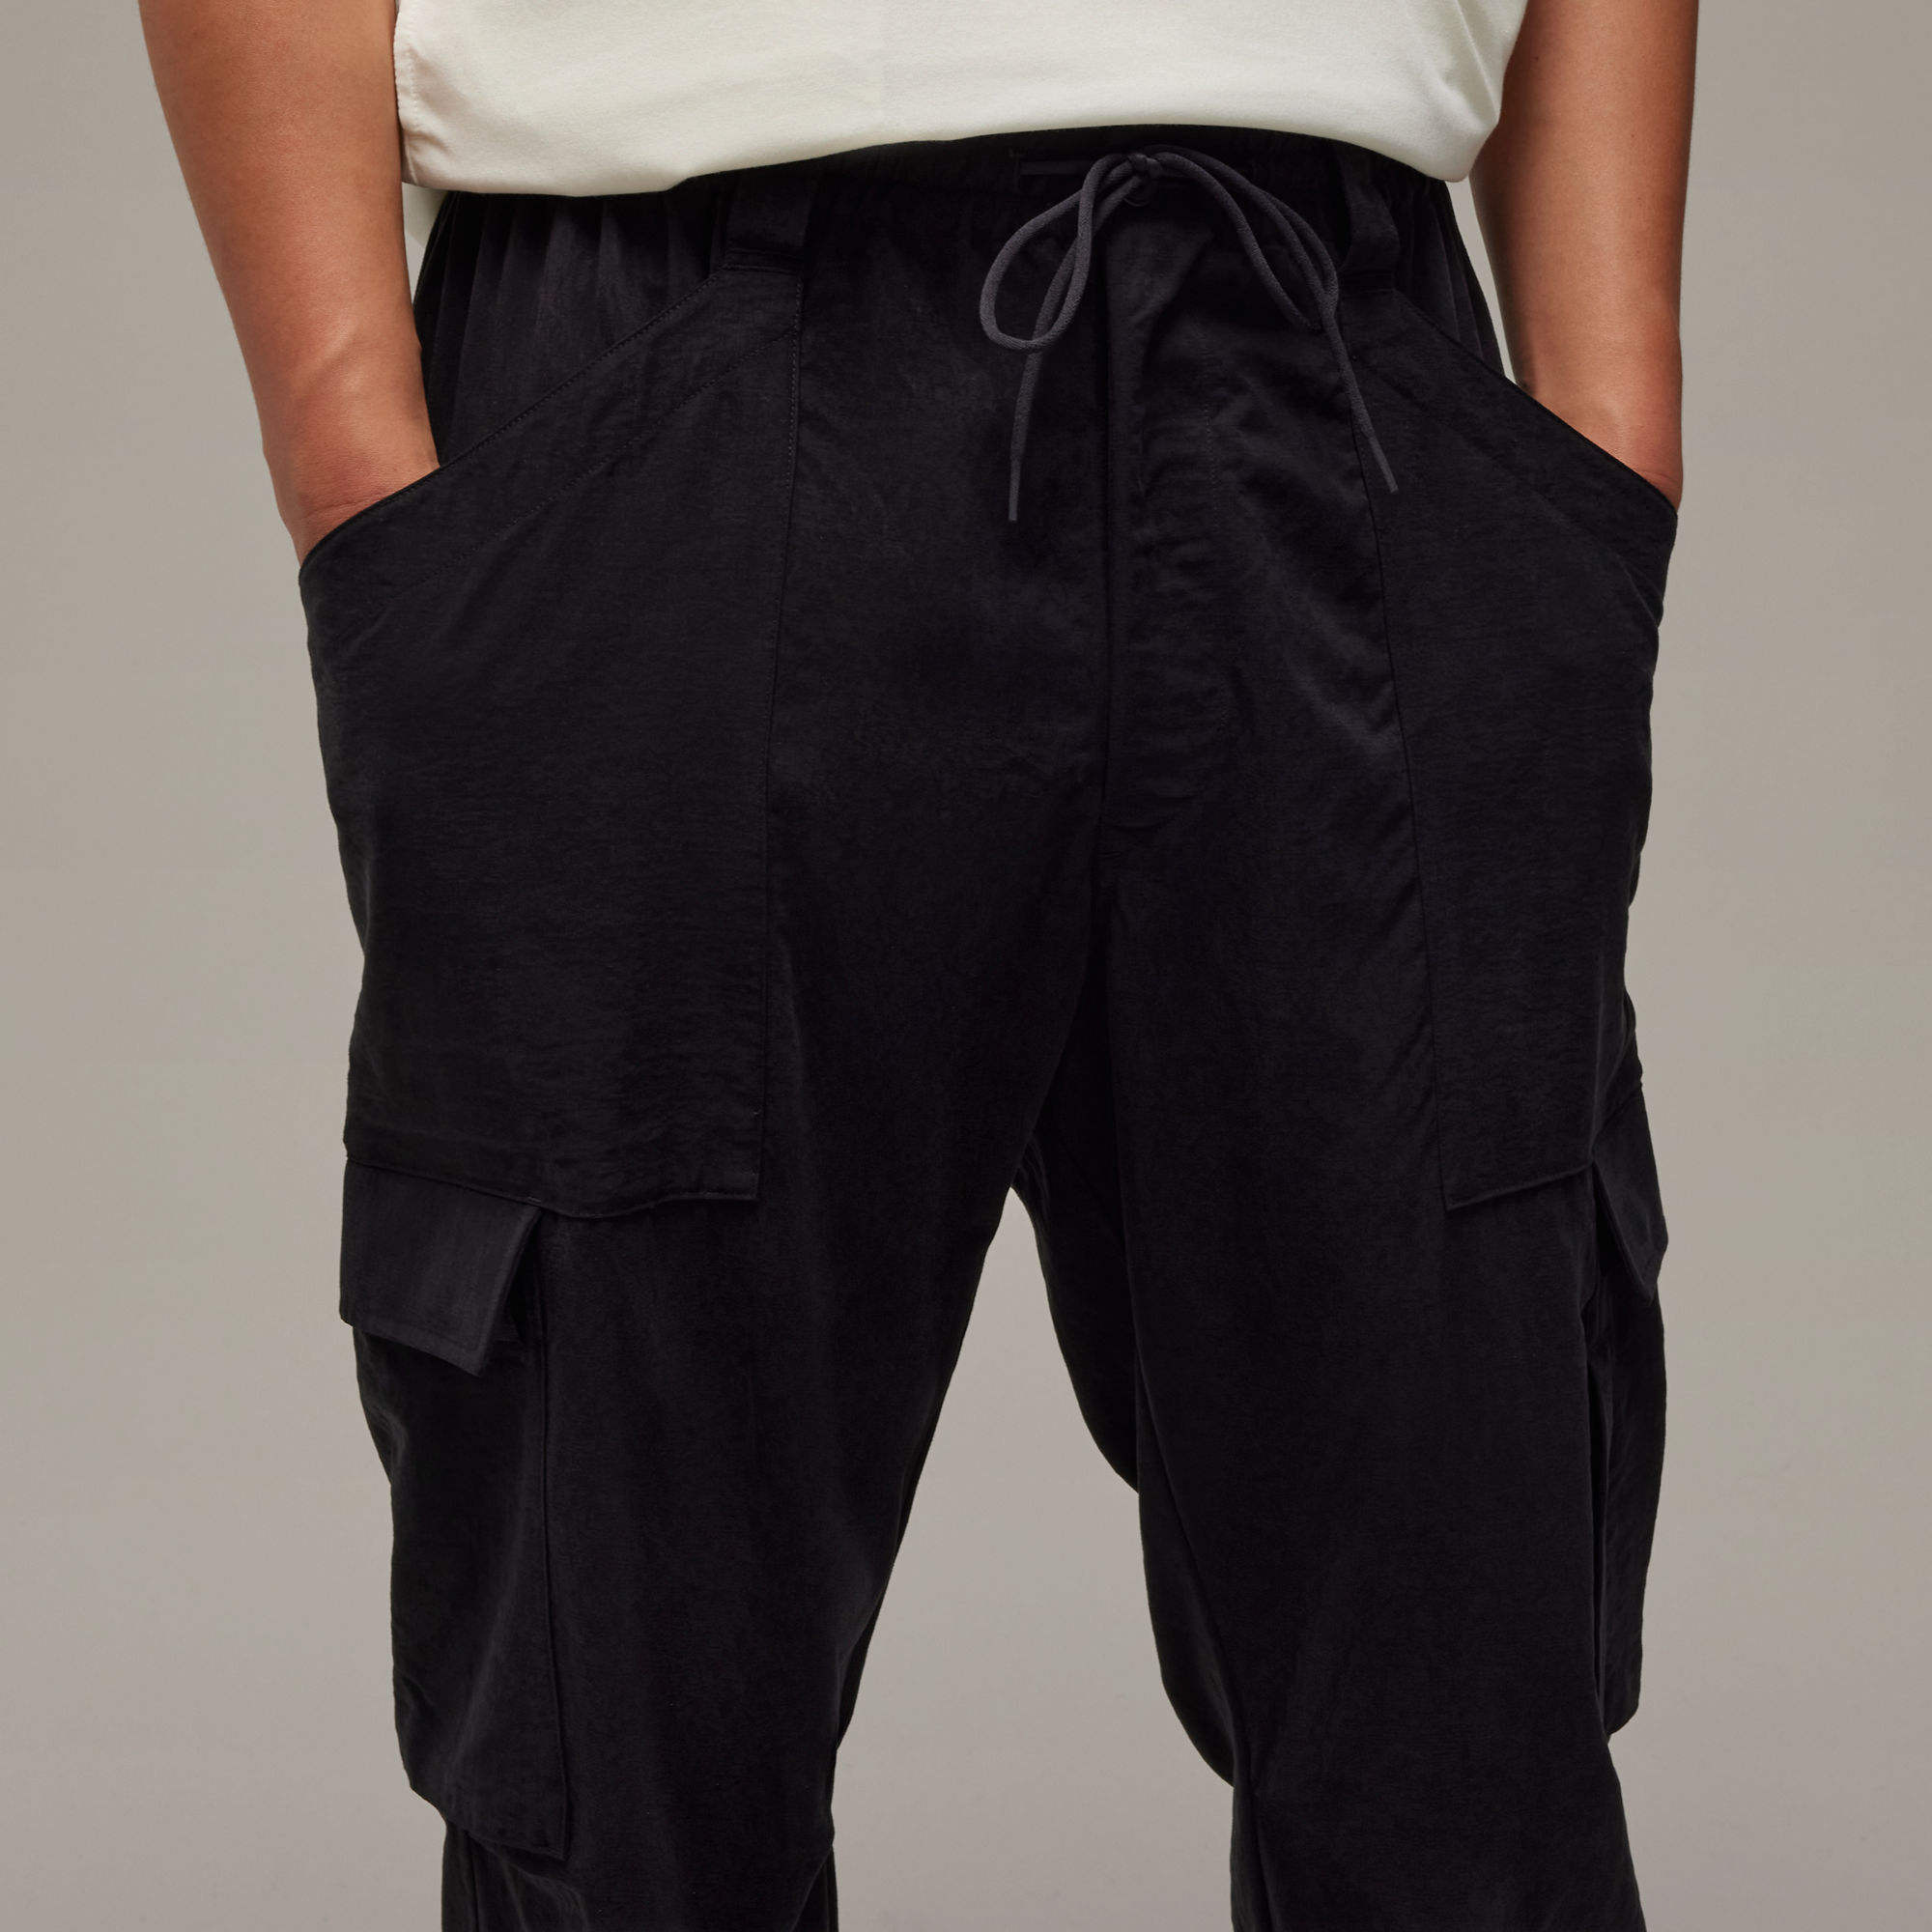 Y-3 洗水斜紋布束腳工裝長褲- 黑色| 男子| adidas(愛迪達)香港官方網上商店